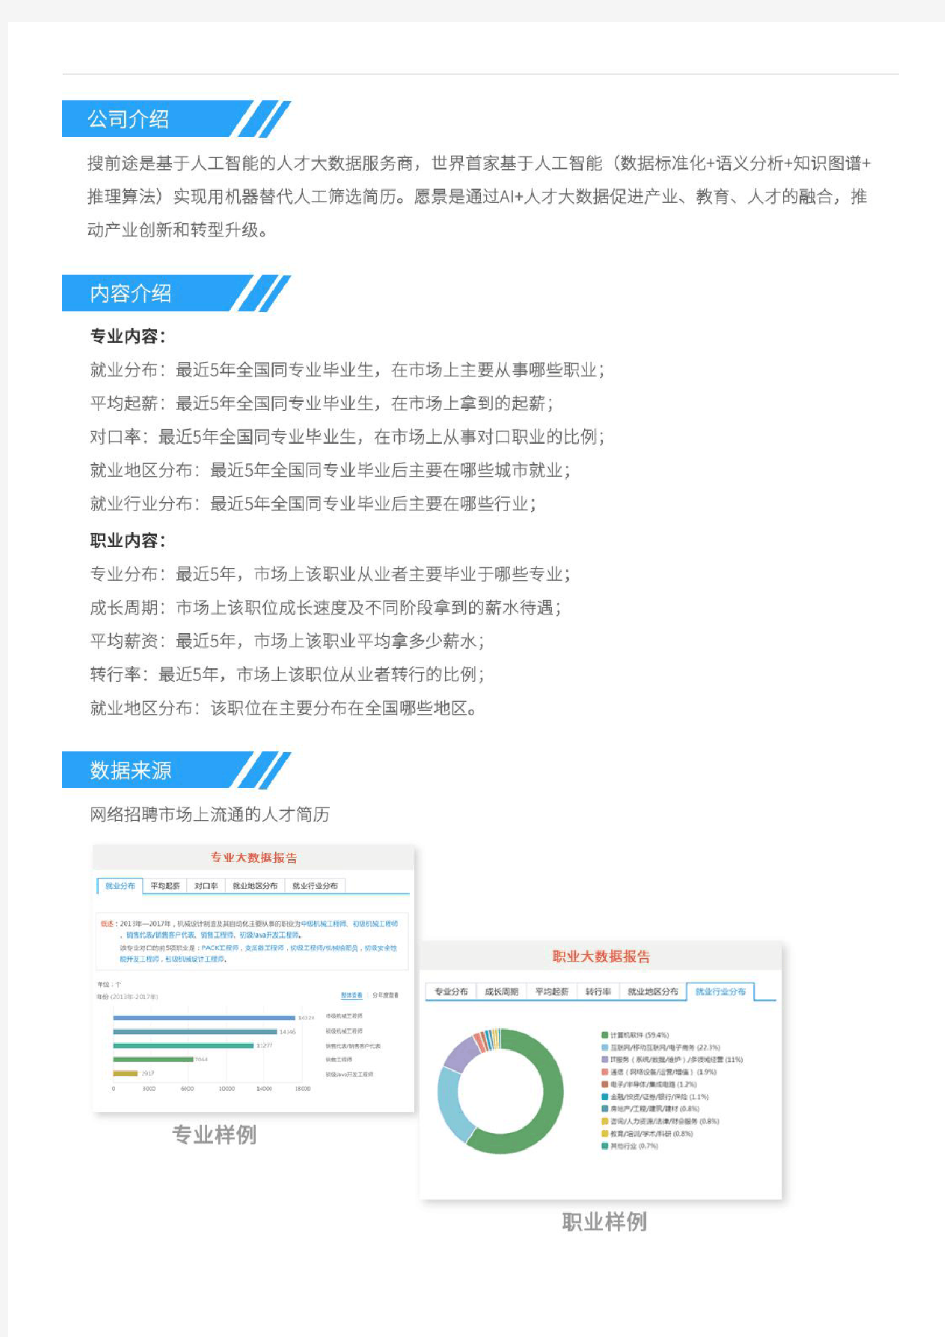 2013-2017年南京航空航天大学工程力学专业毕业生就业大数据报告